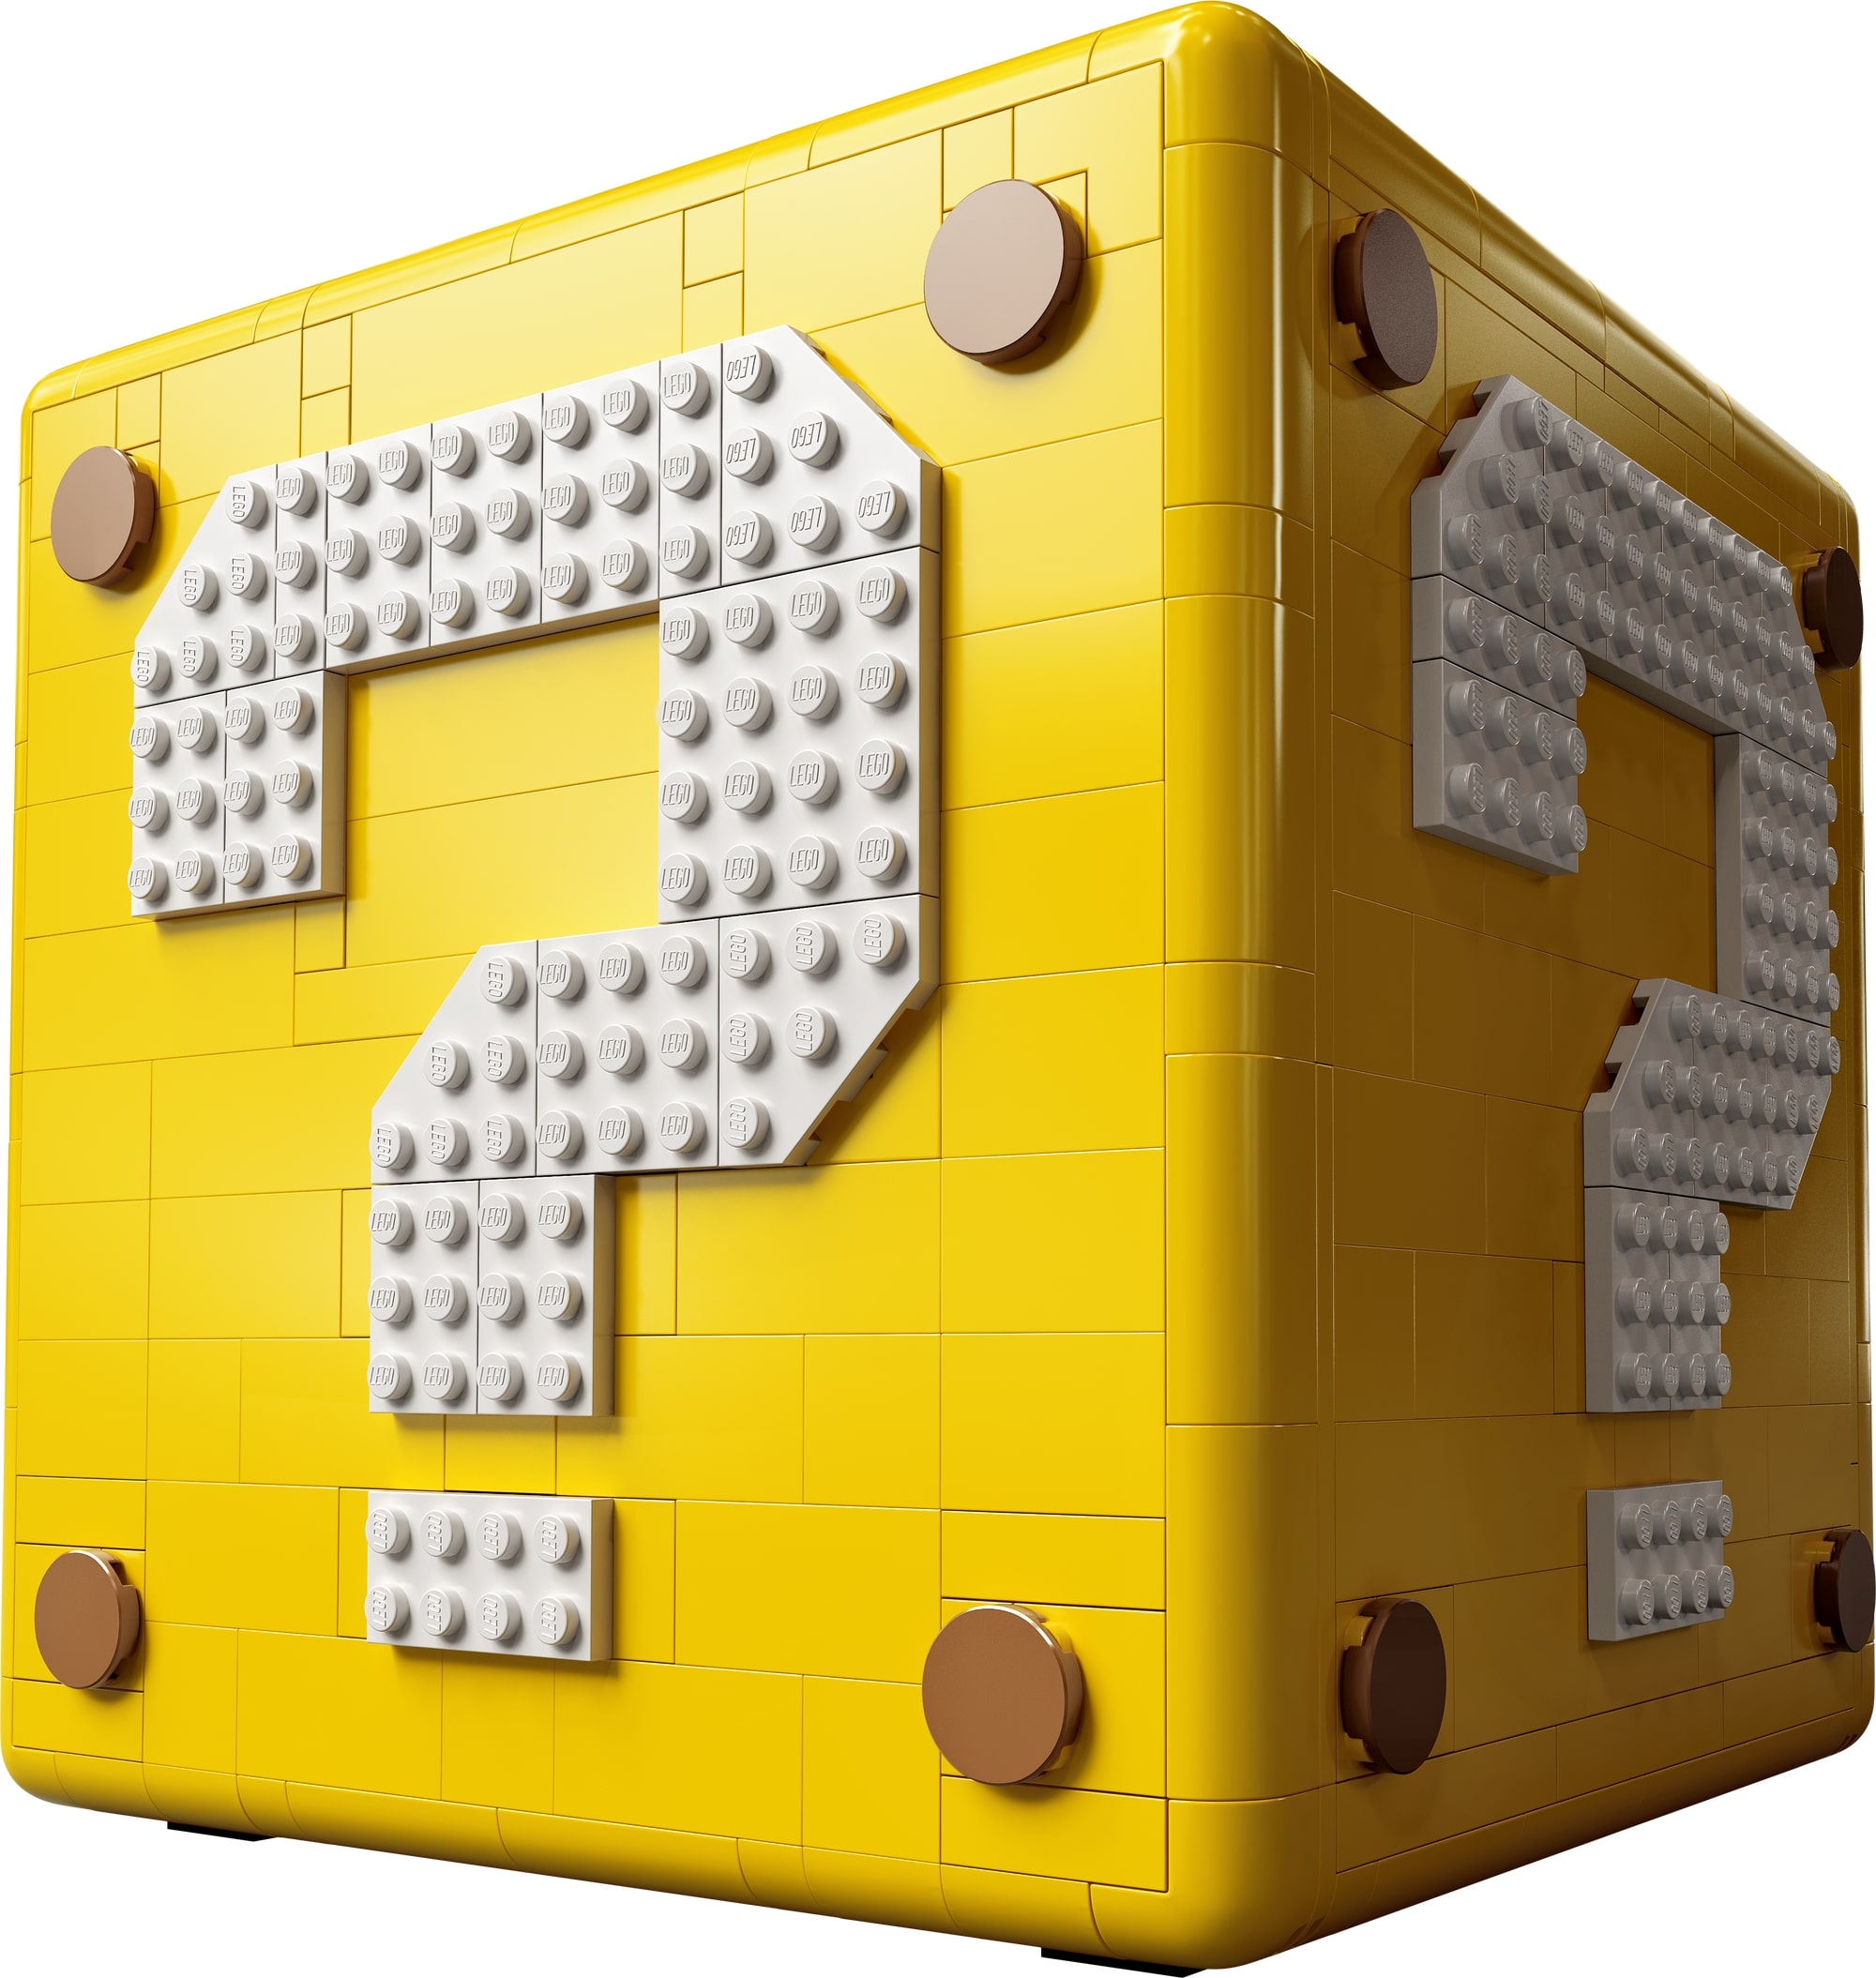 10月1日発売レゴスーパーマリオ スーパーマリオ64 ハテナブロック 新製品情報 21 スタッズ レゴ Lego 総合ニュースメディア